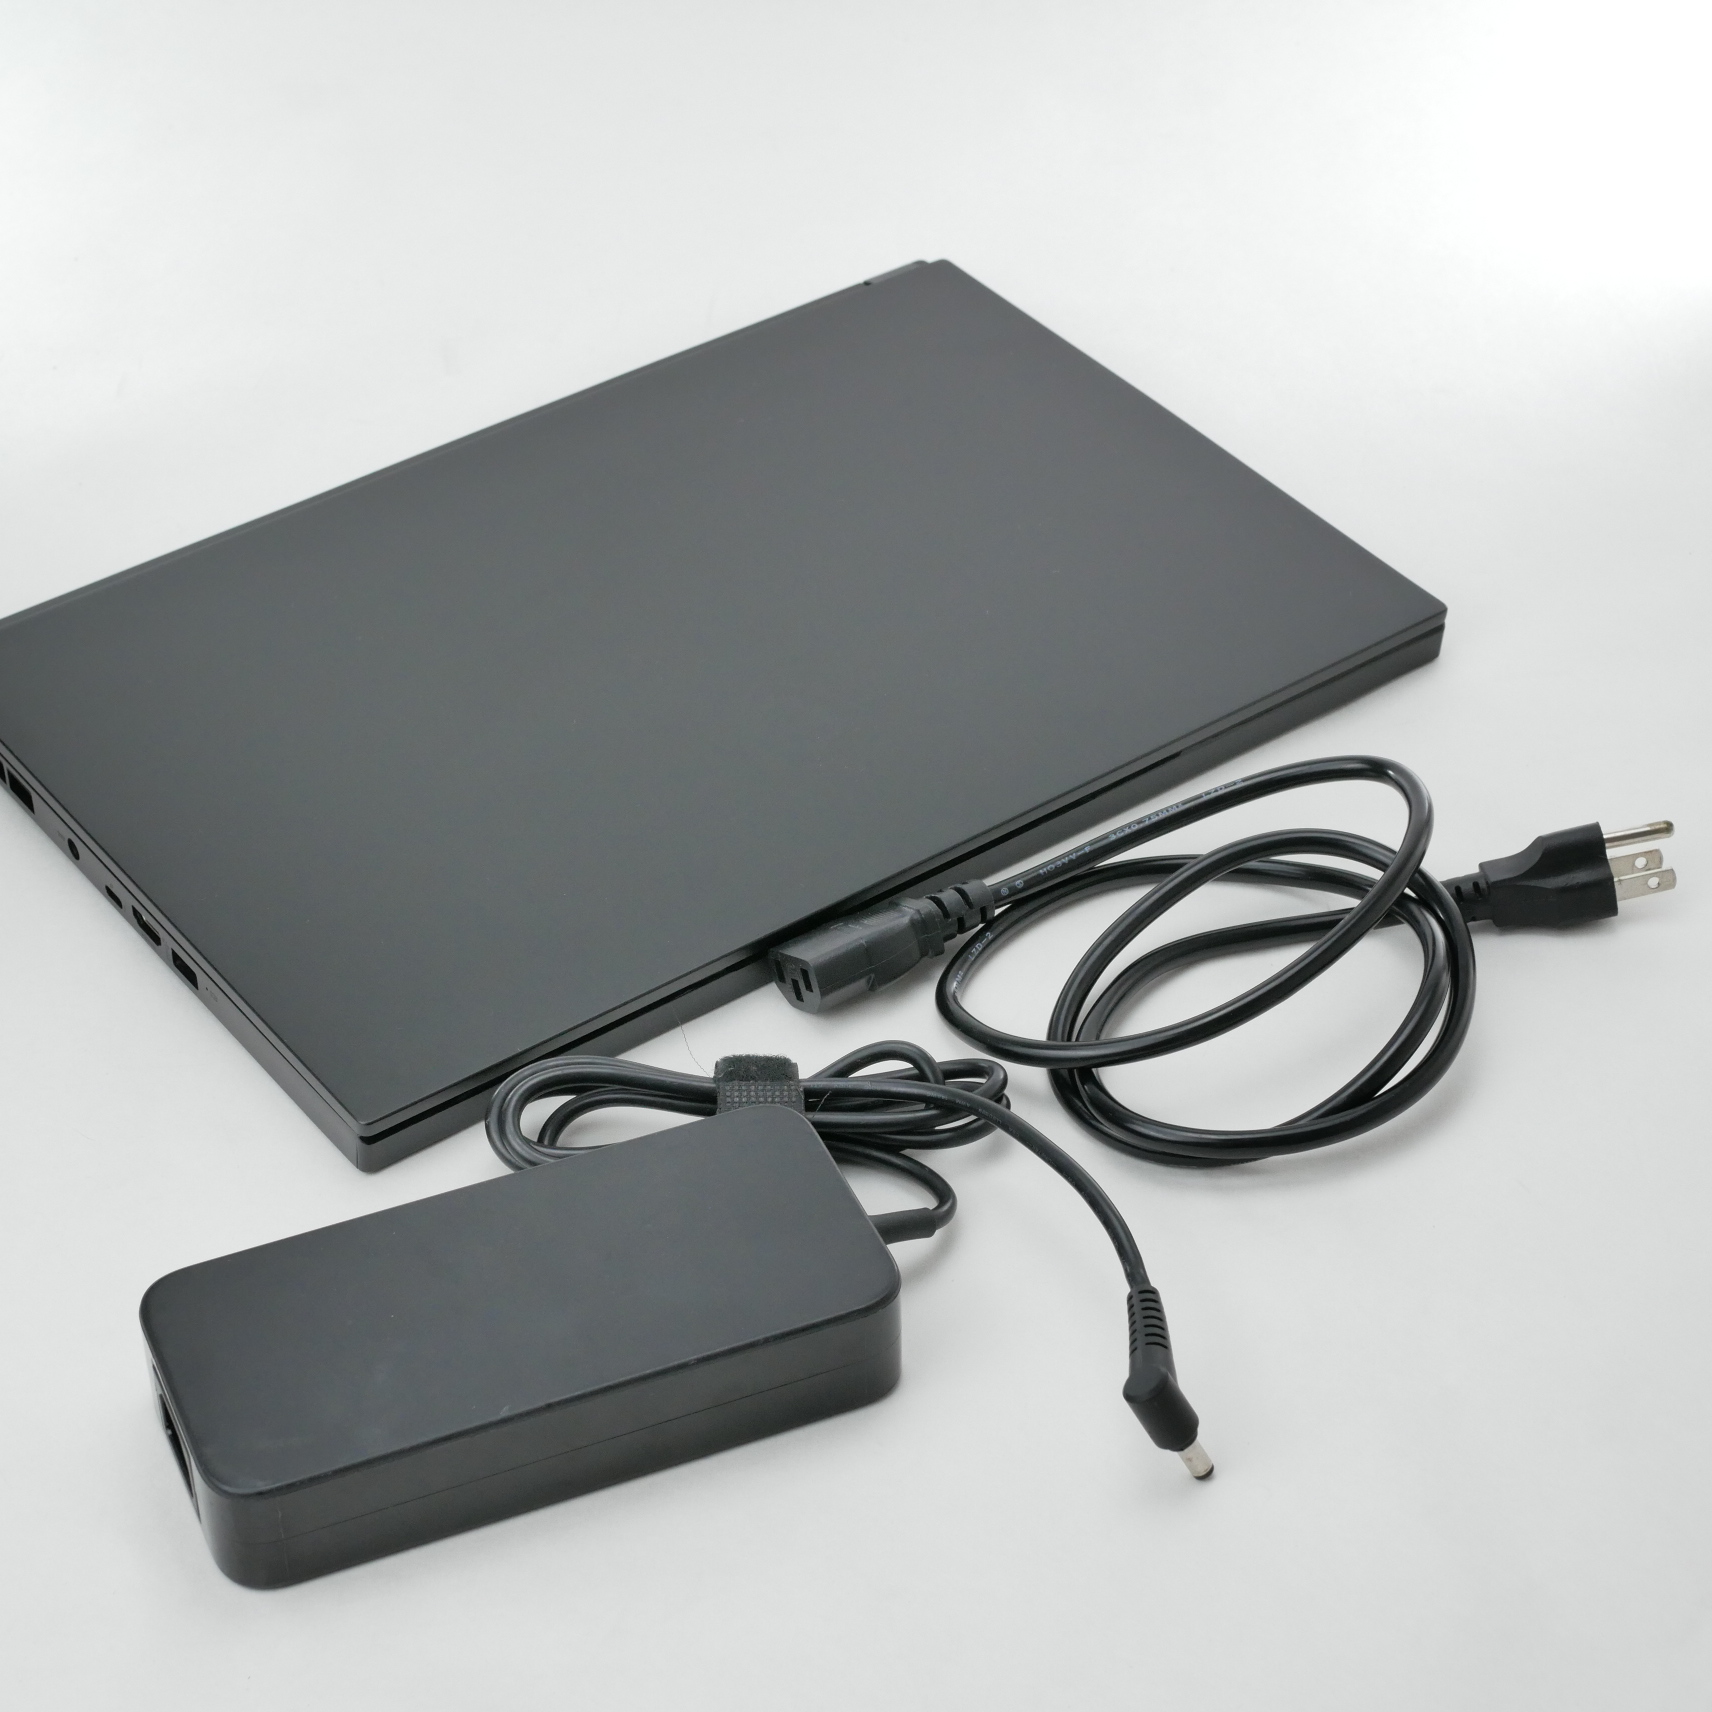 MSI GS66 Stealth 10SF-683 15.6" FHD laptop i7-10750H 16GB/1TB RTX 2070 Max-Q